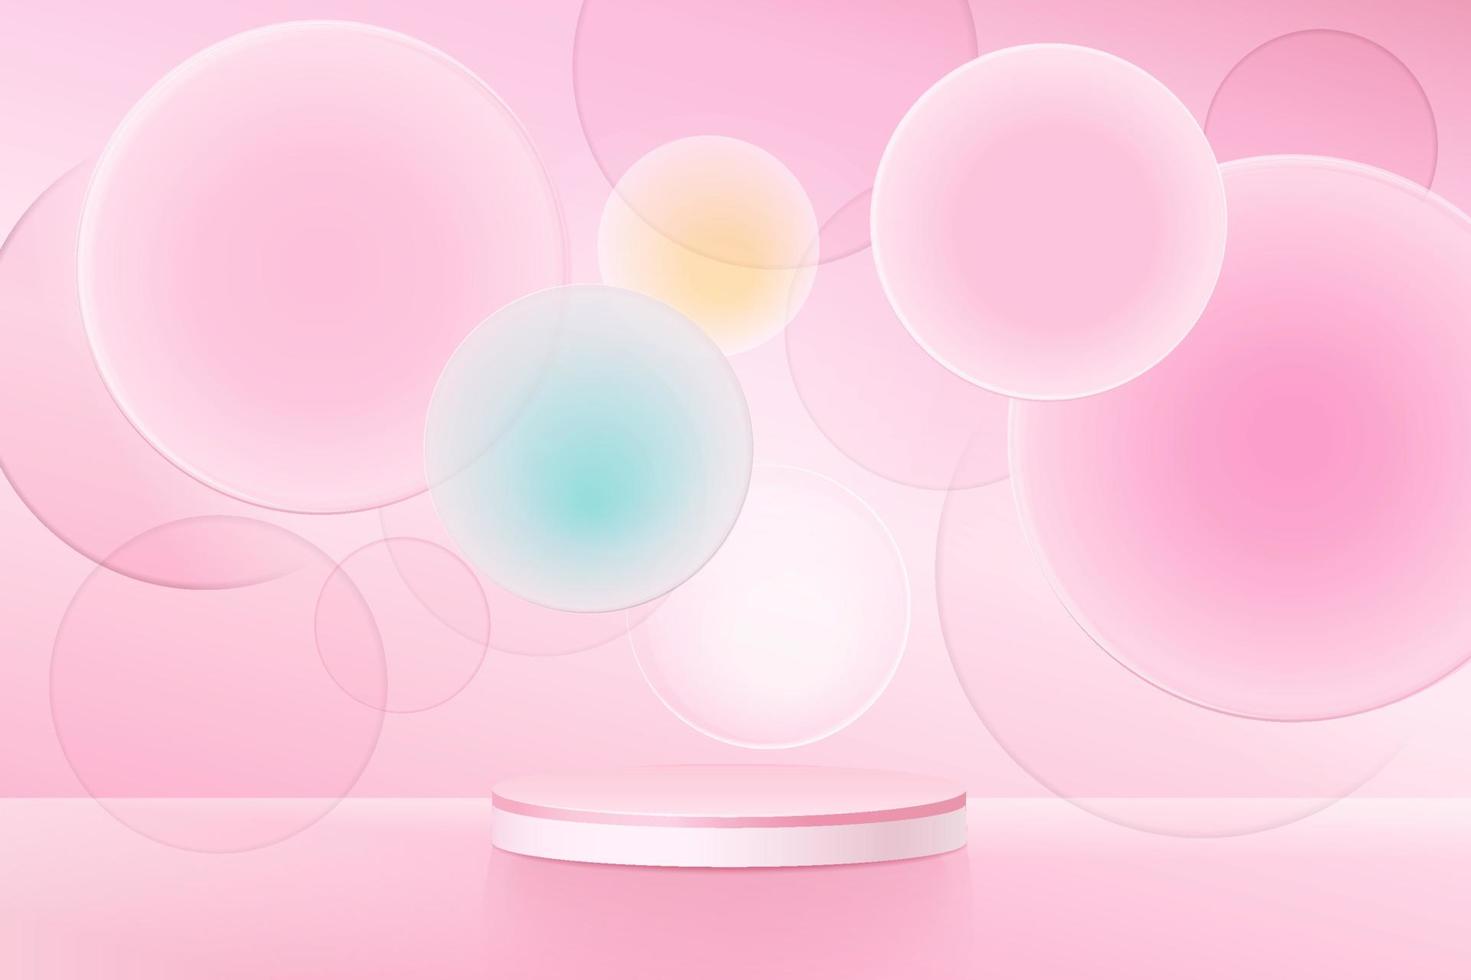 escena abstracta mínima con podio o plataforma, formas geométricas de burbujas aéreas sobre fondo rosa. vector